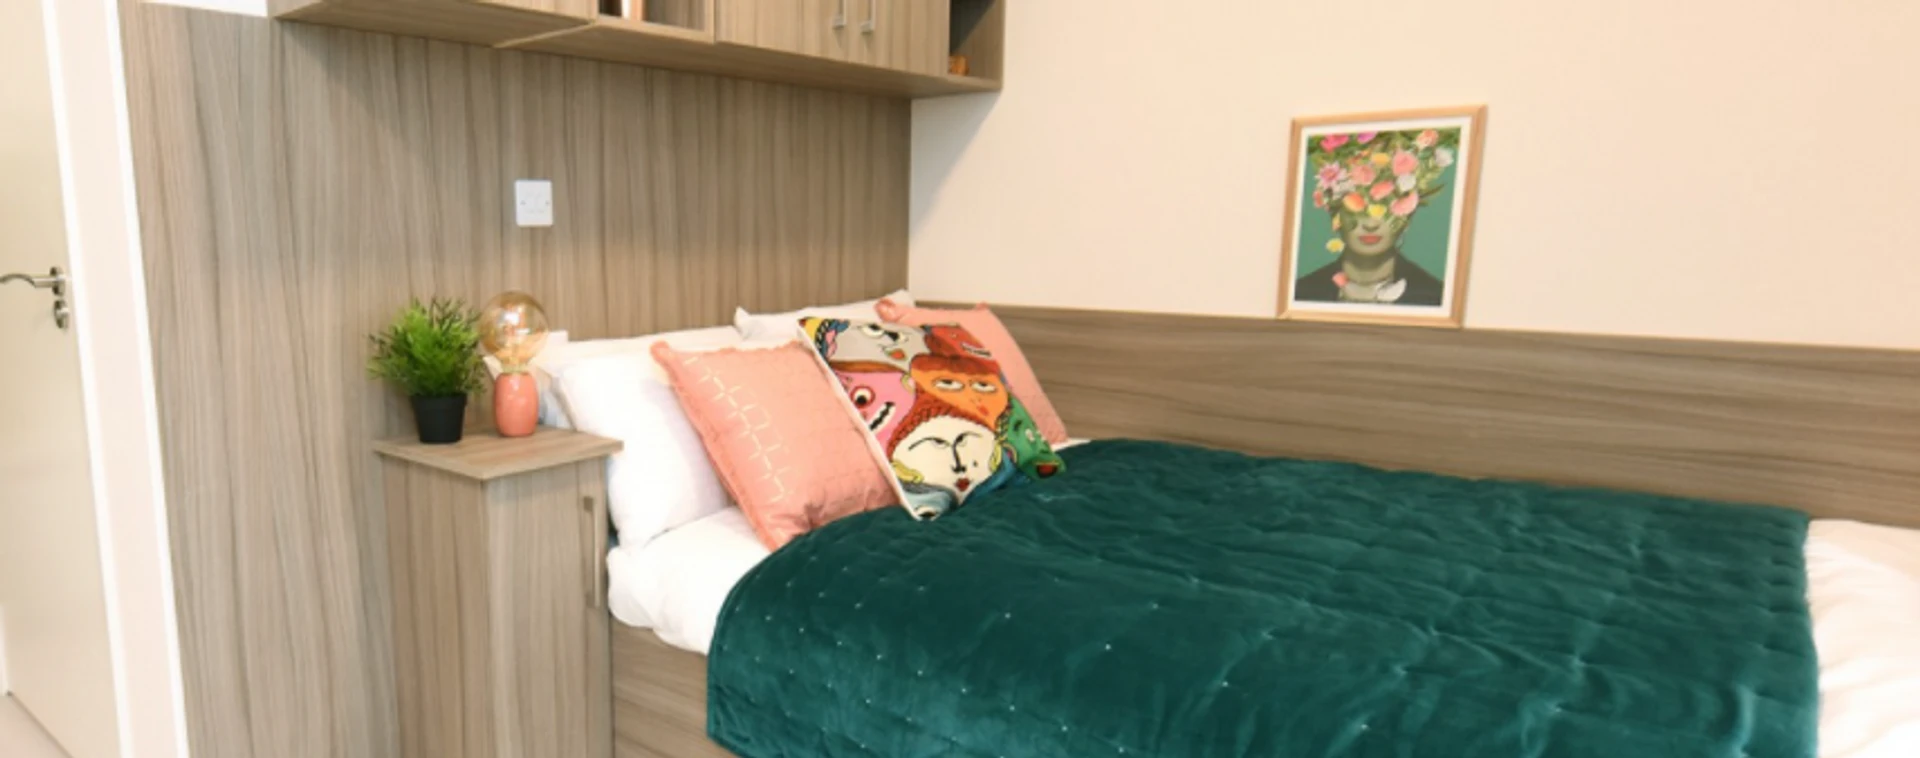 Habitación en alquiler con cama doble Cork